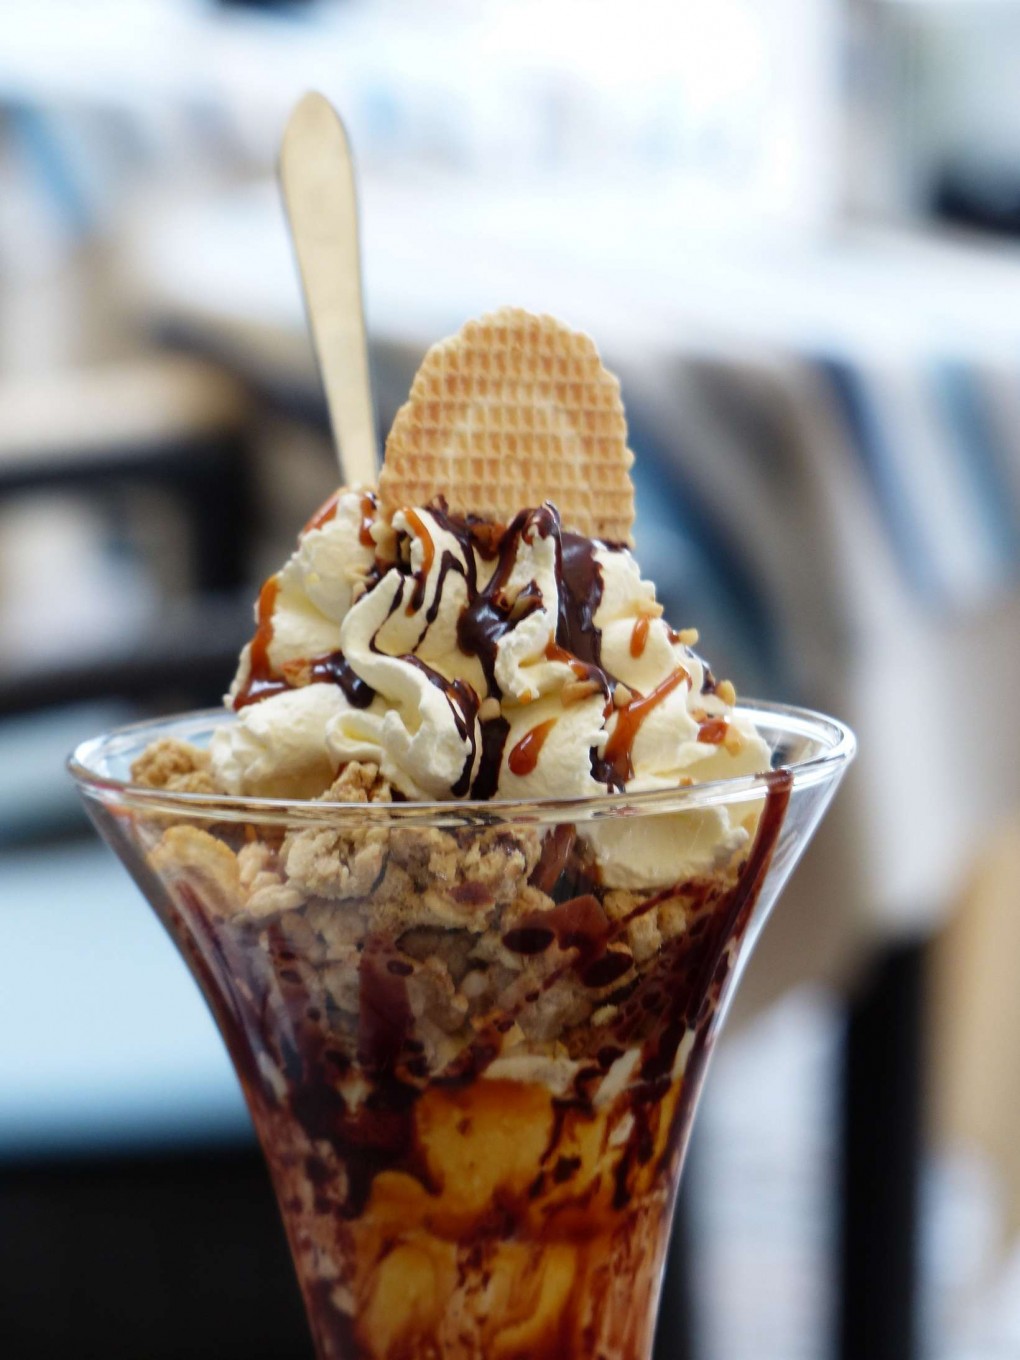 chocolate-desert-ice-cream-2424